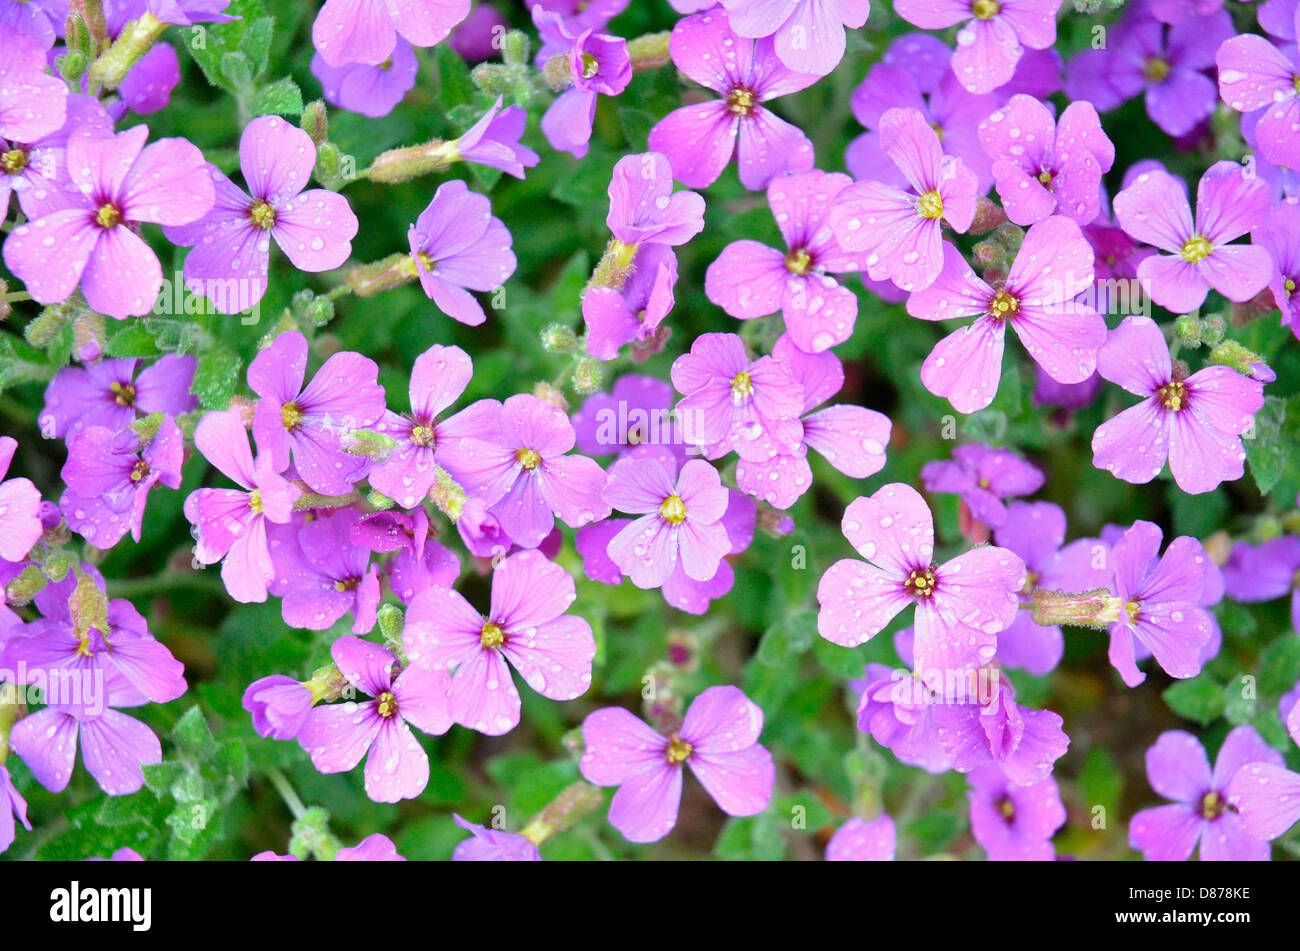 Aubretia flowers Stock Photo